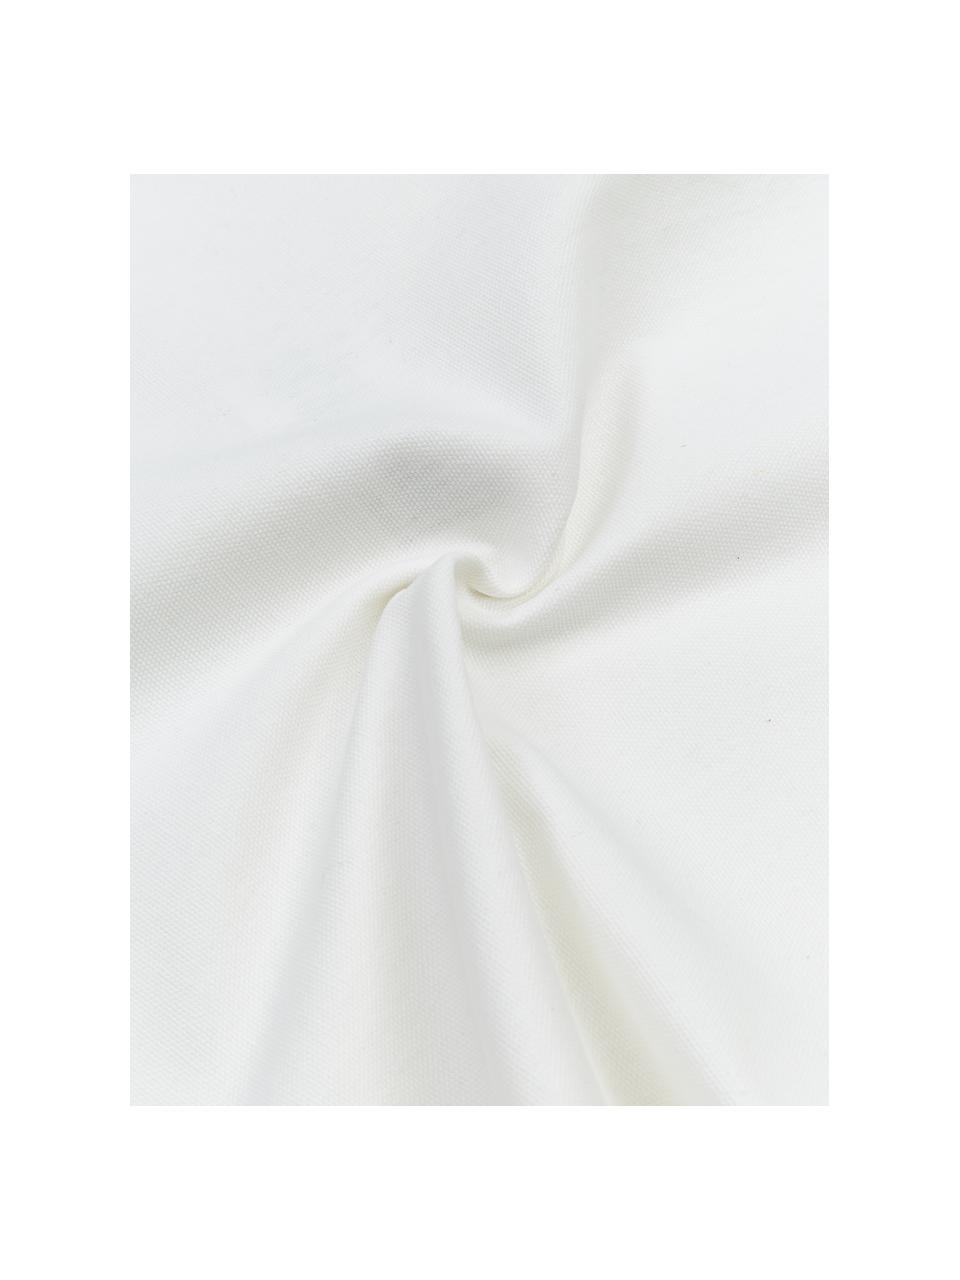 Kissenhülle Shylo in Weiß mit Quasten, 100% Baumwolle, Weiß, B 40 x L 40 cm